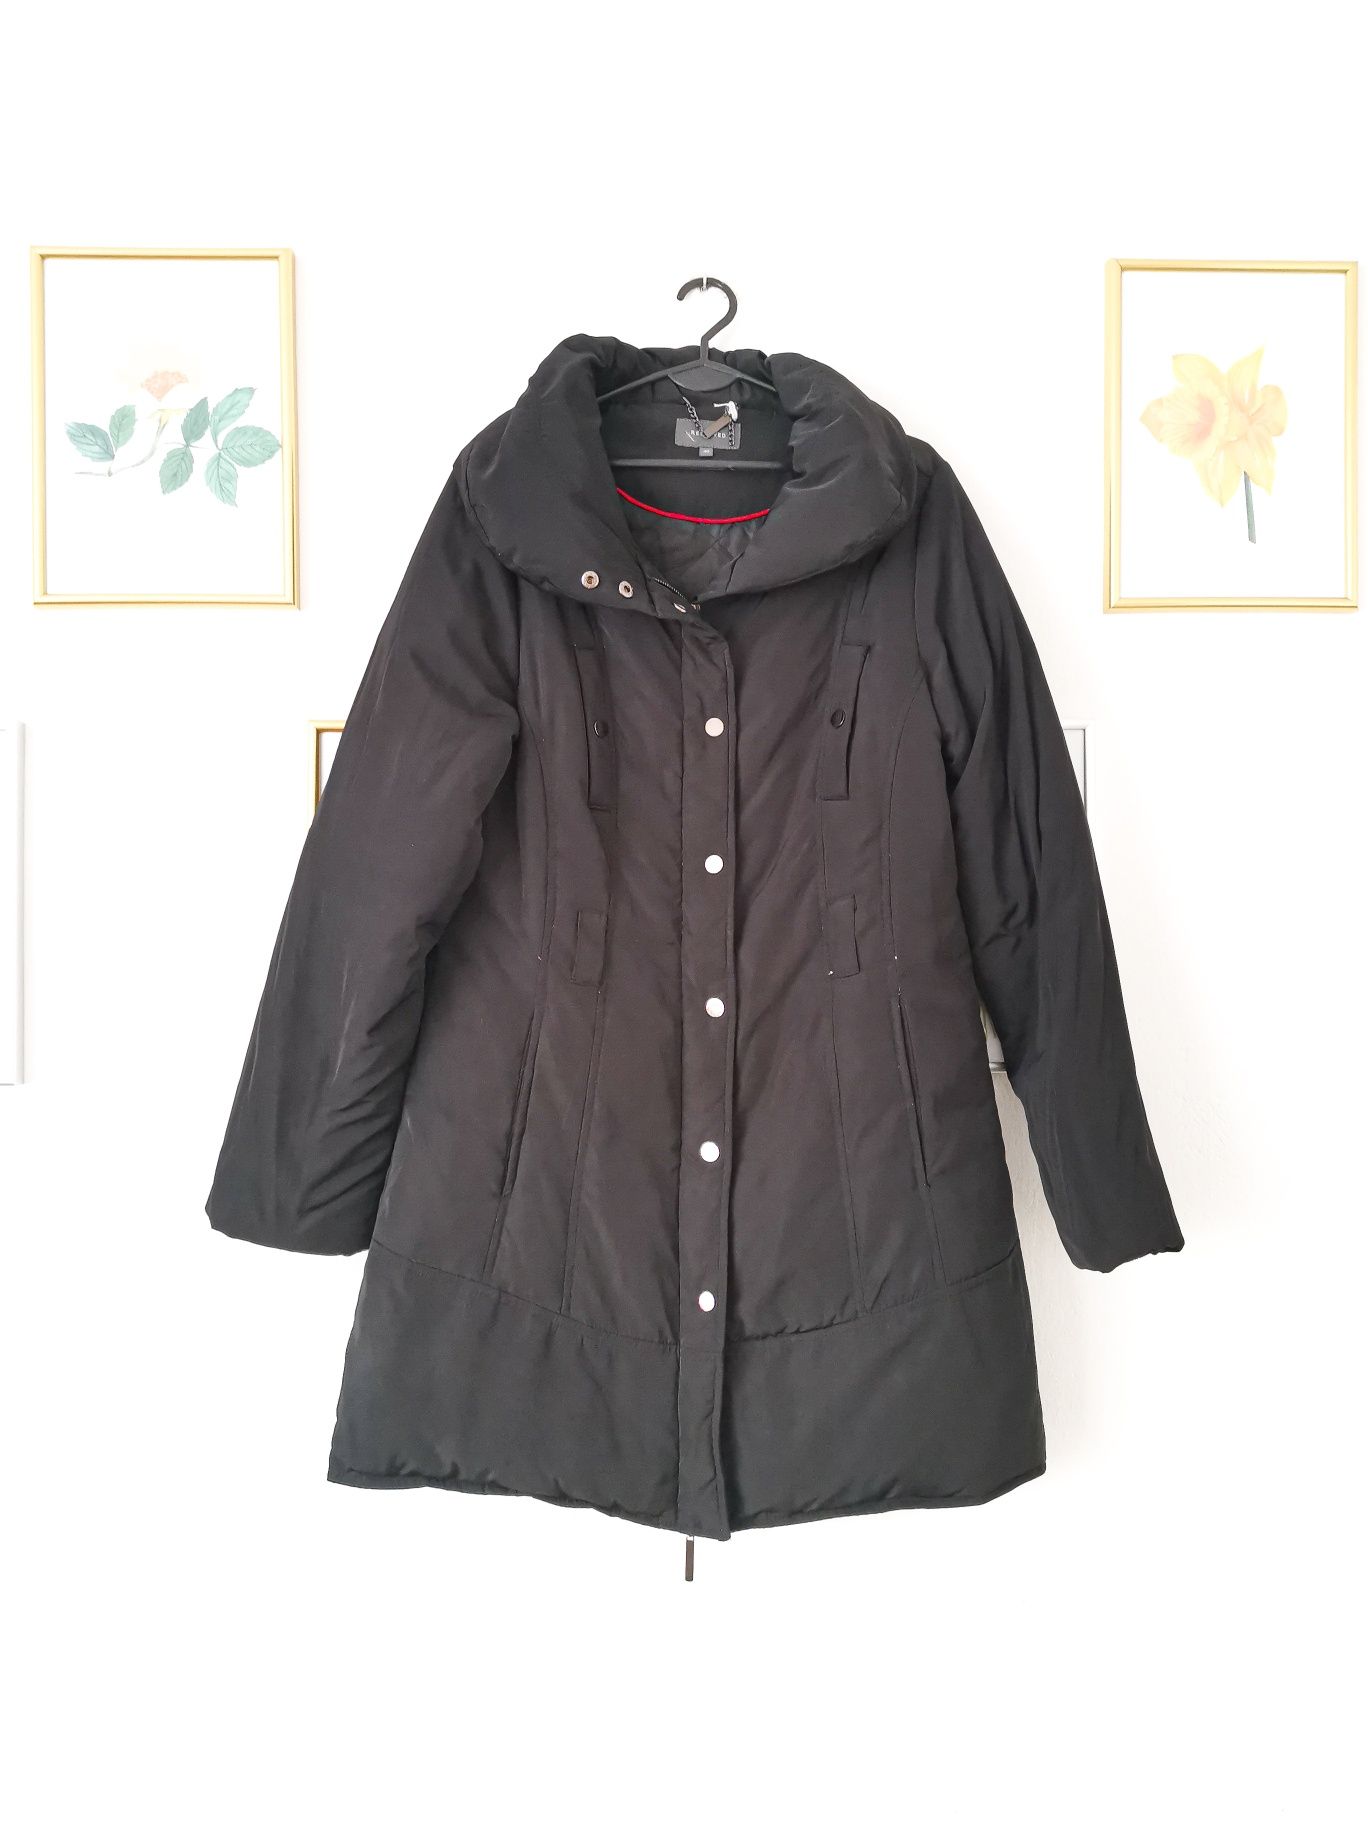 Czarna zimowa kurtka Reserved, 40, L, ciepła, pierze, puchowa